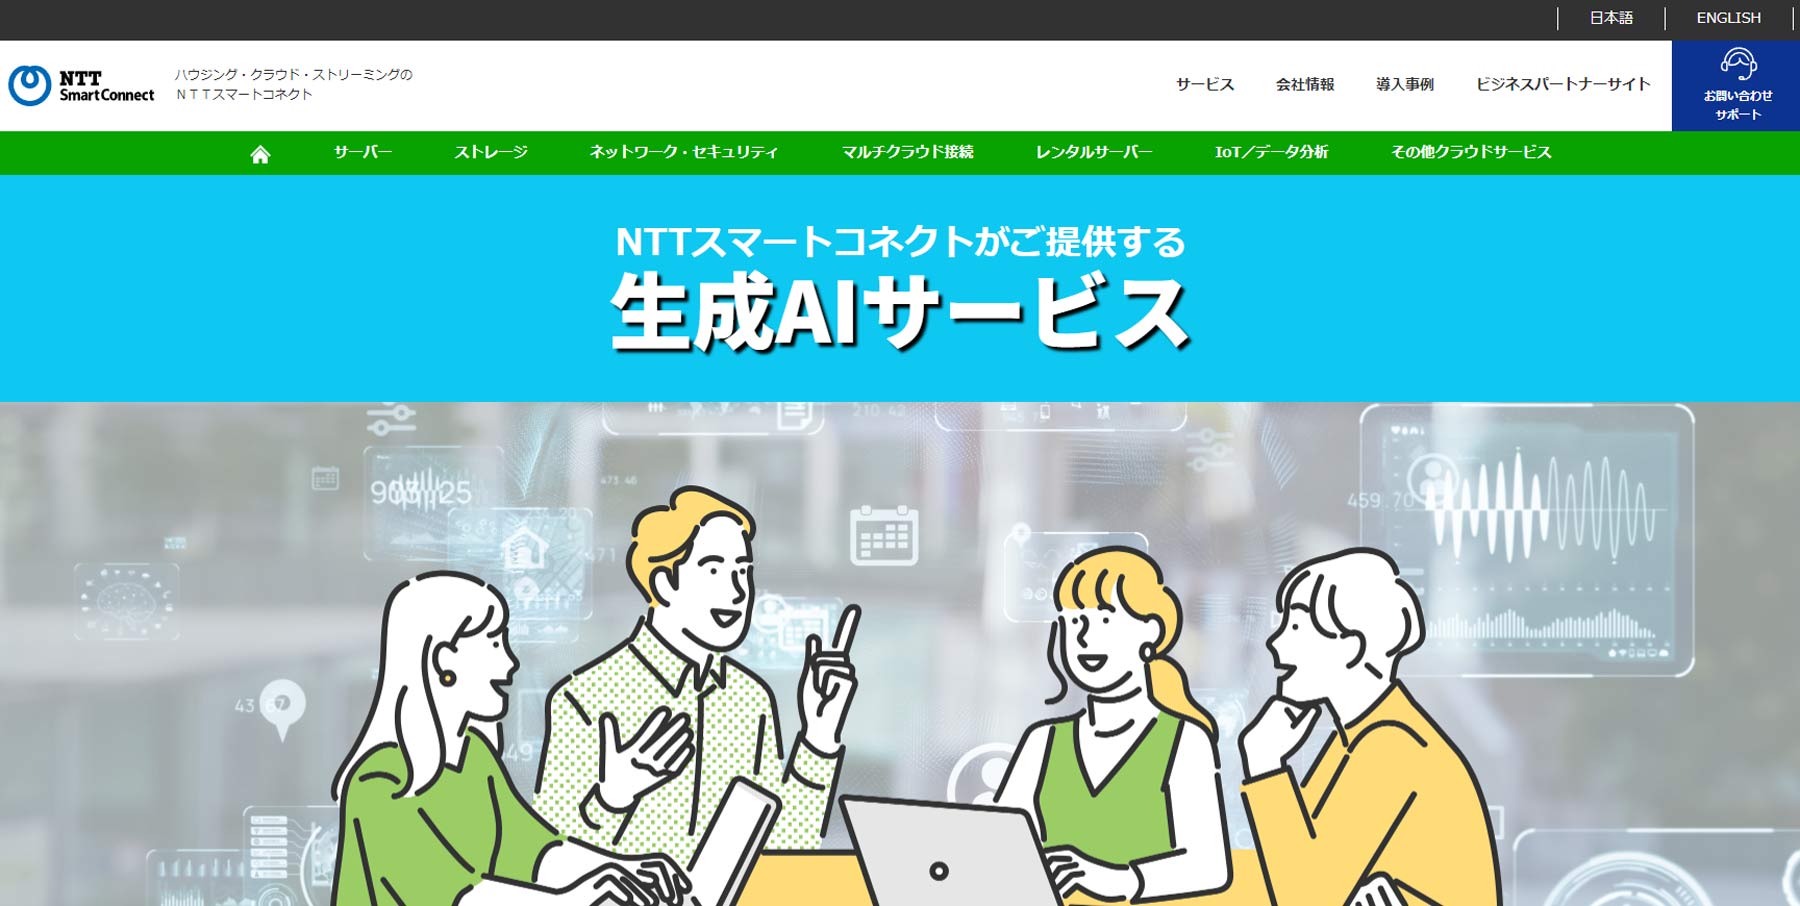 NTTスマートコネクト公式Webサイト